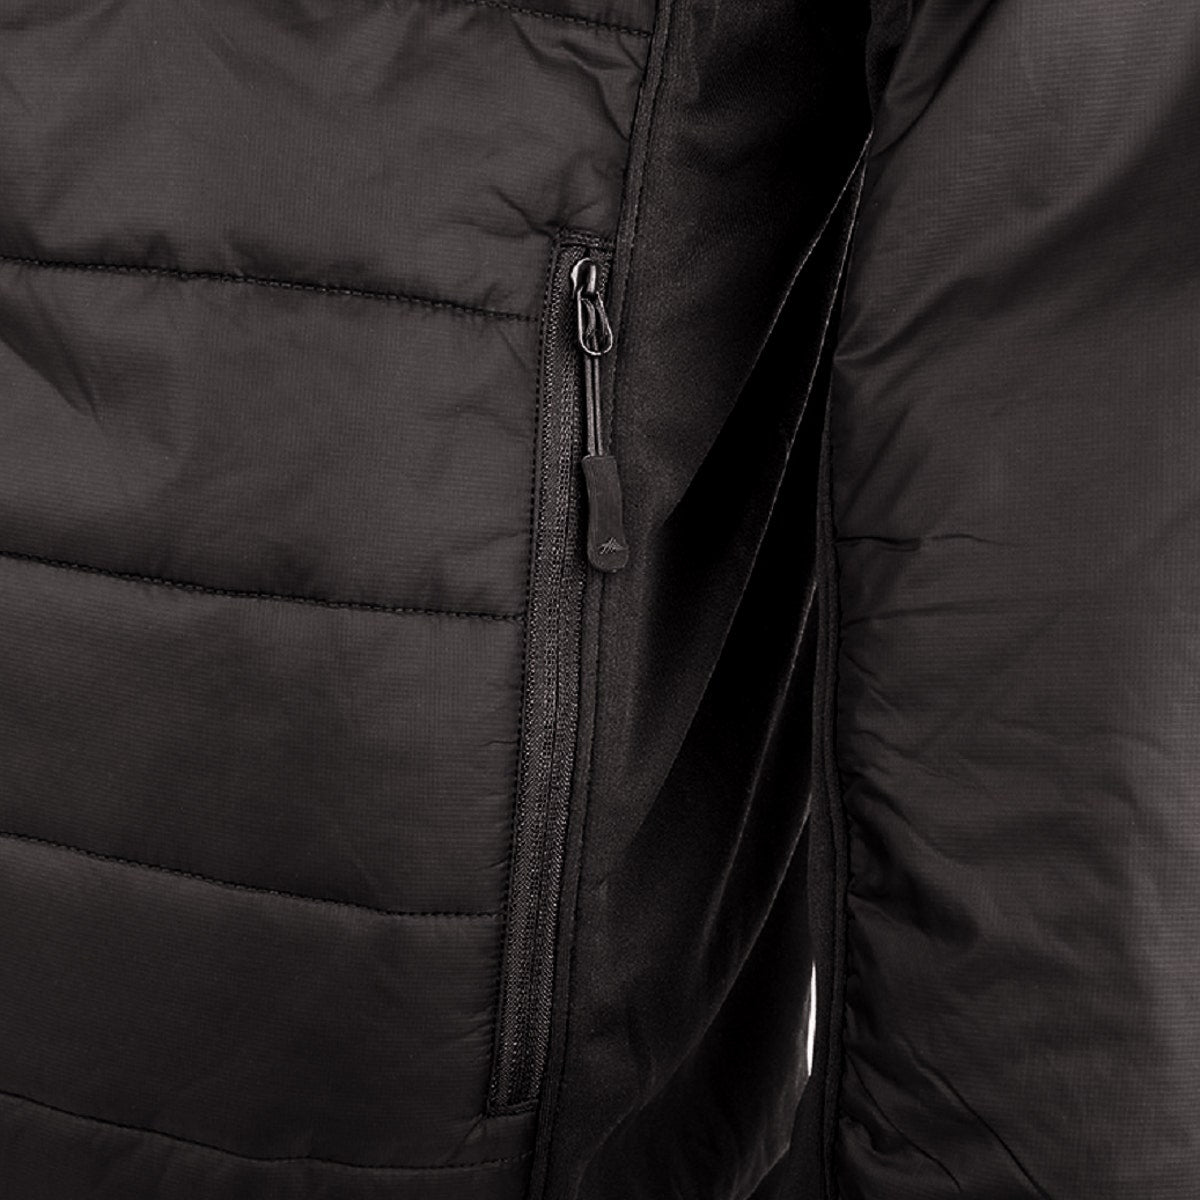 High Sierra Molo Men’s Insulated Zip Jacket – Water Resistant